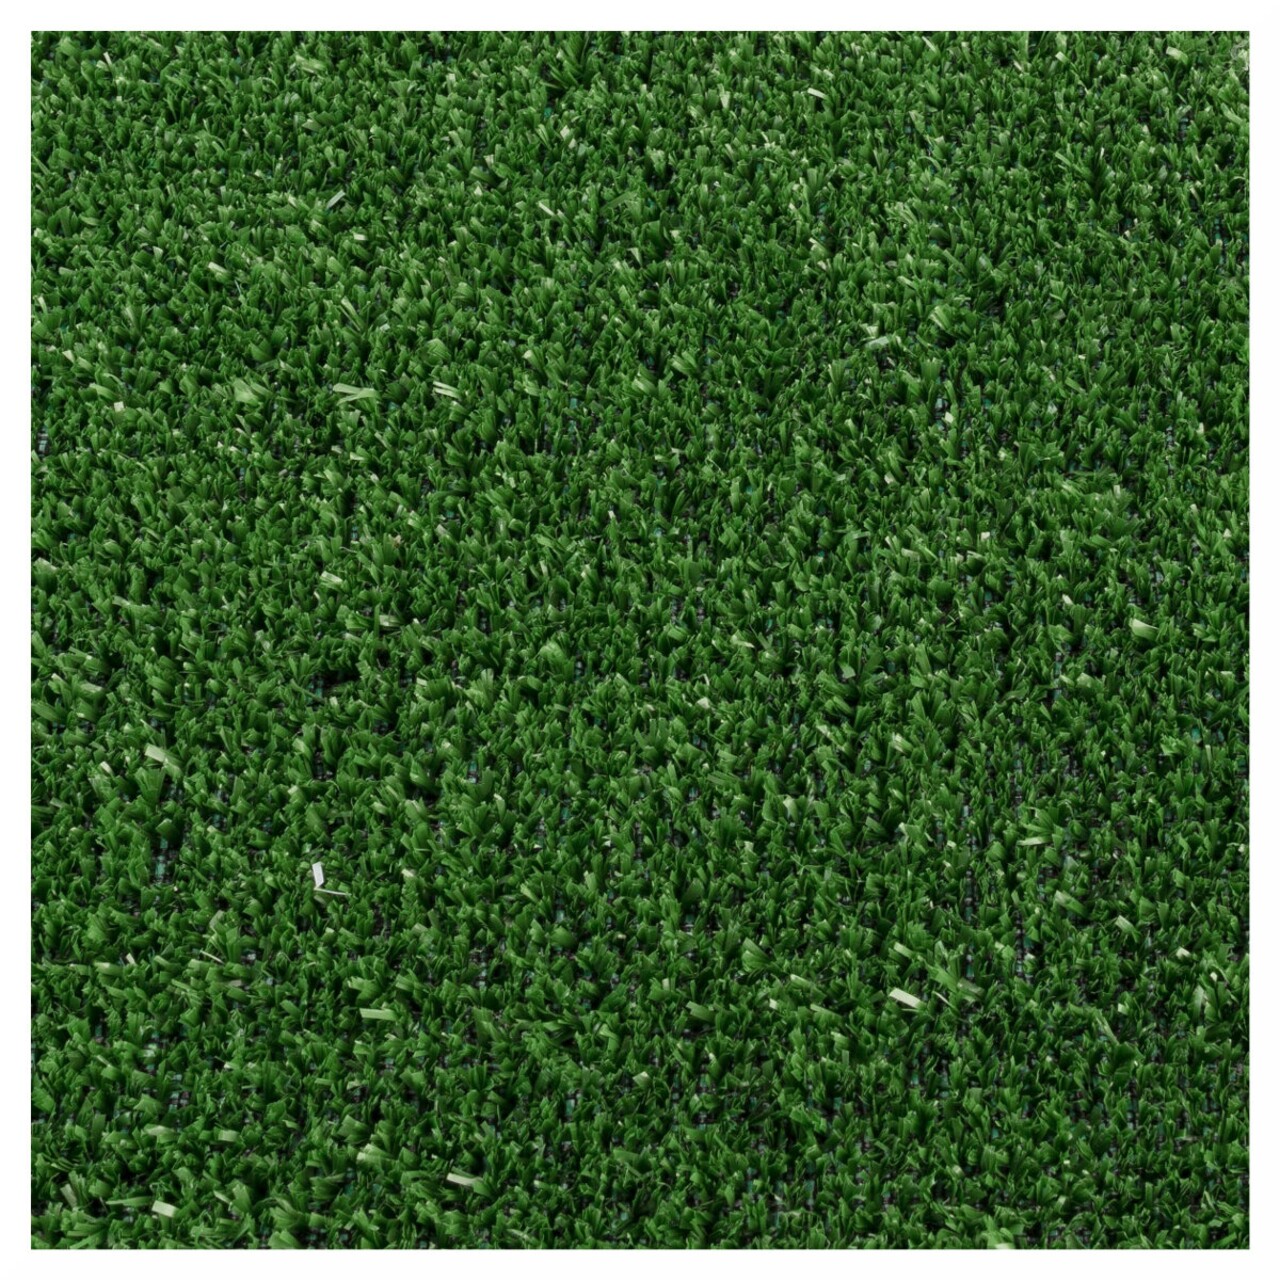 Gazon Artificial Evergreen 5 Mm, Decorino, 133x1000 Cm, Polipropilena, Verde